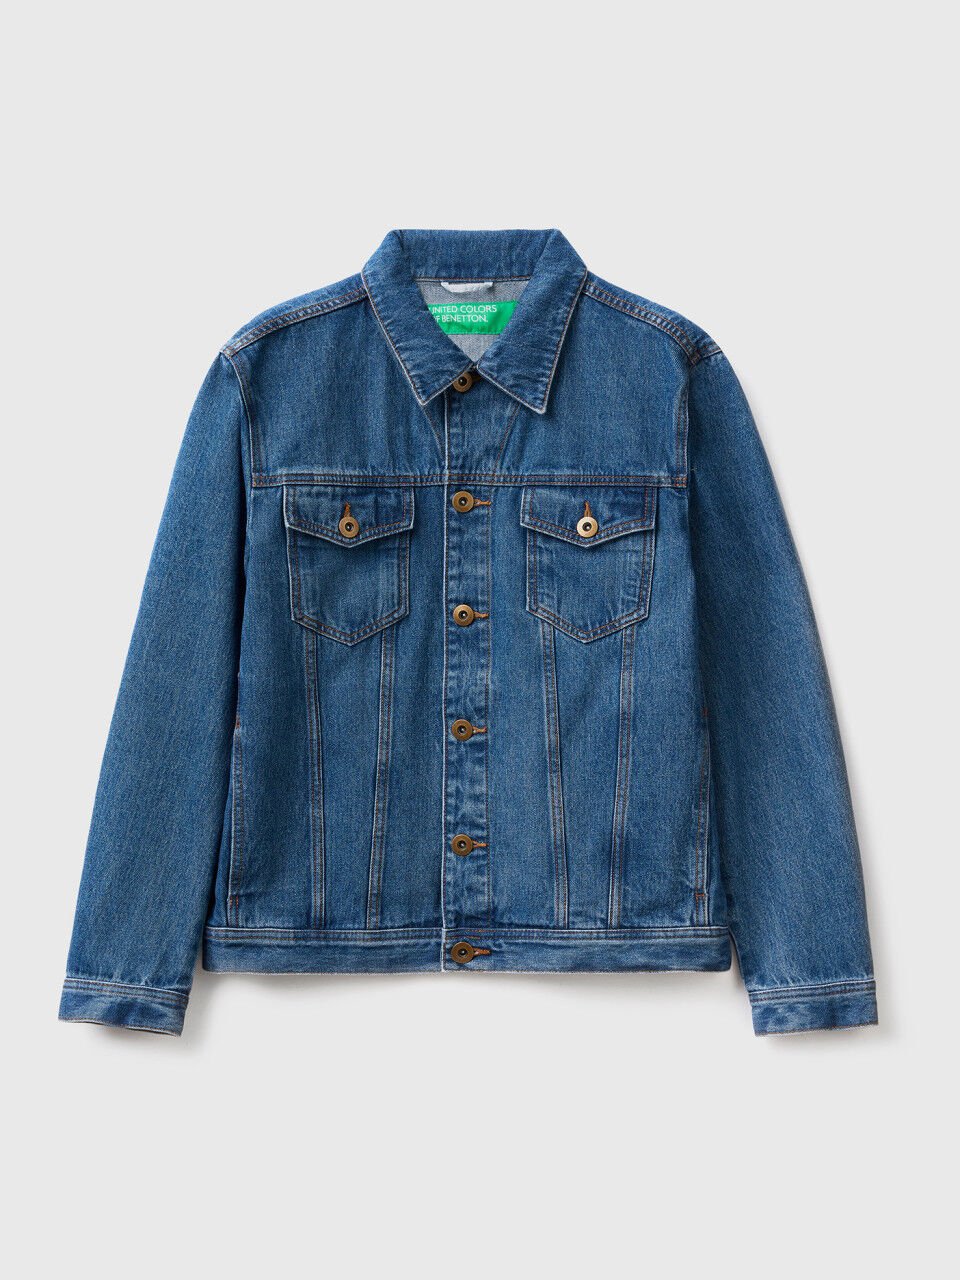 beweging elk Voel me slecht Men's Coats and Jackets Collection 2023 | Benetton